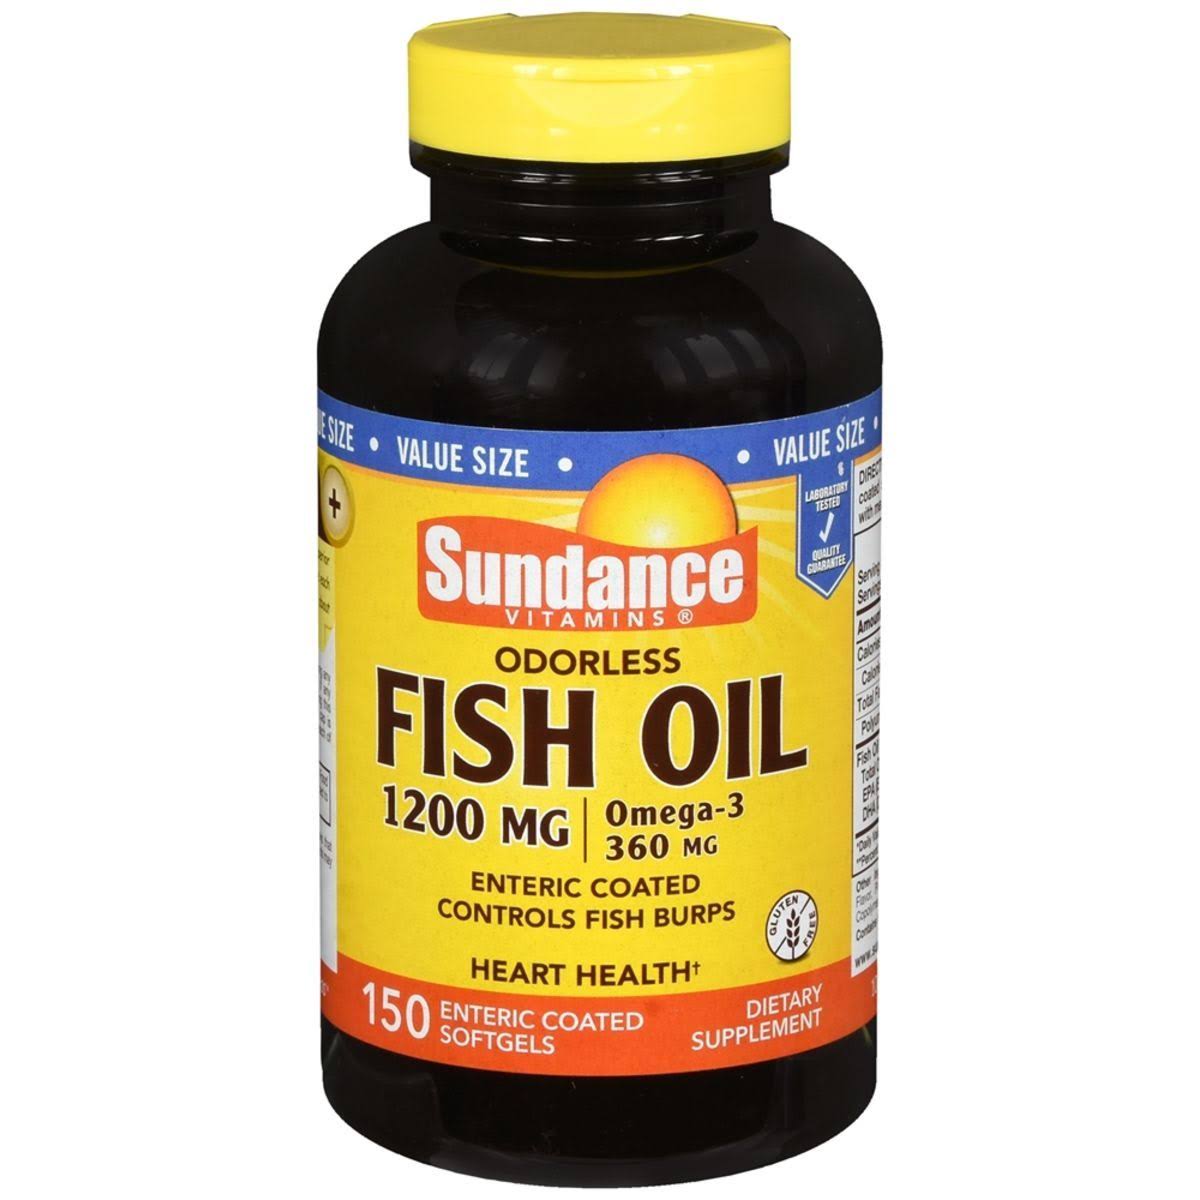 Sundance Omega-3 Odorless Fish Oil Supplement - 150ct